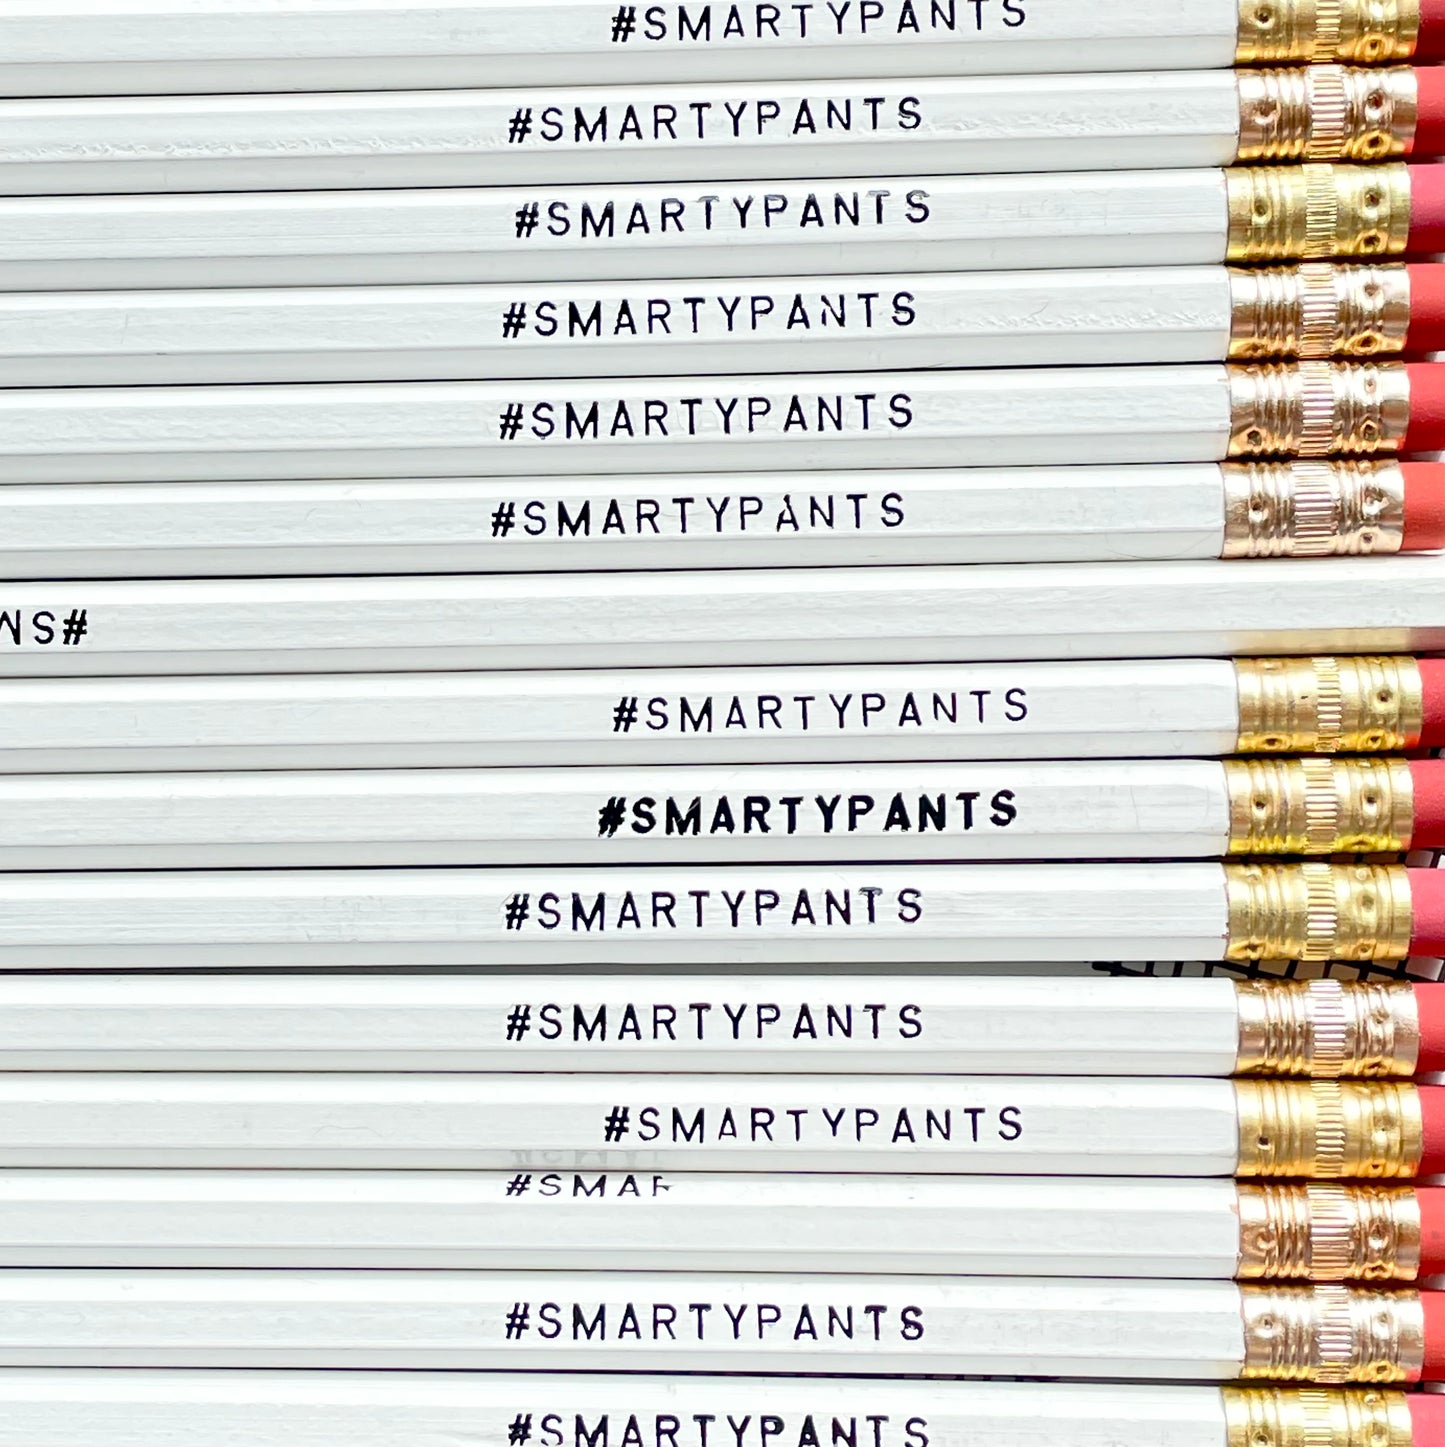 LESS THAN PERFECT PENCILS - #SMARTYPANTS PENCIL SET